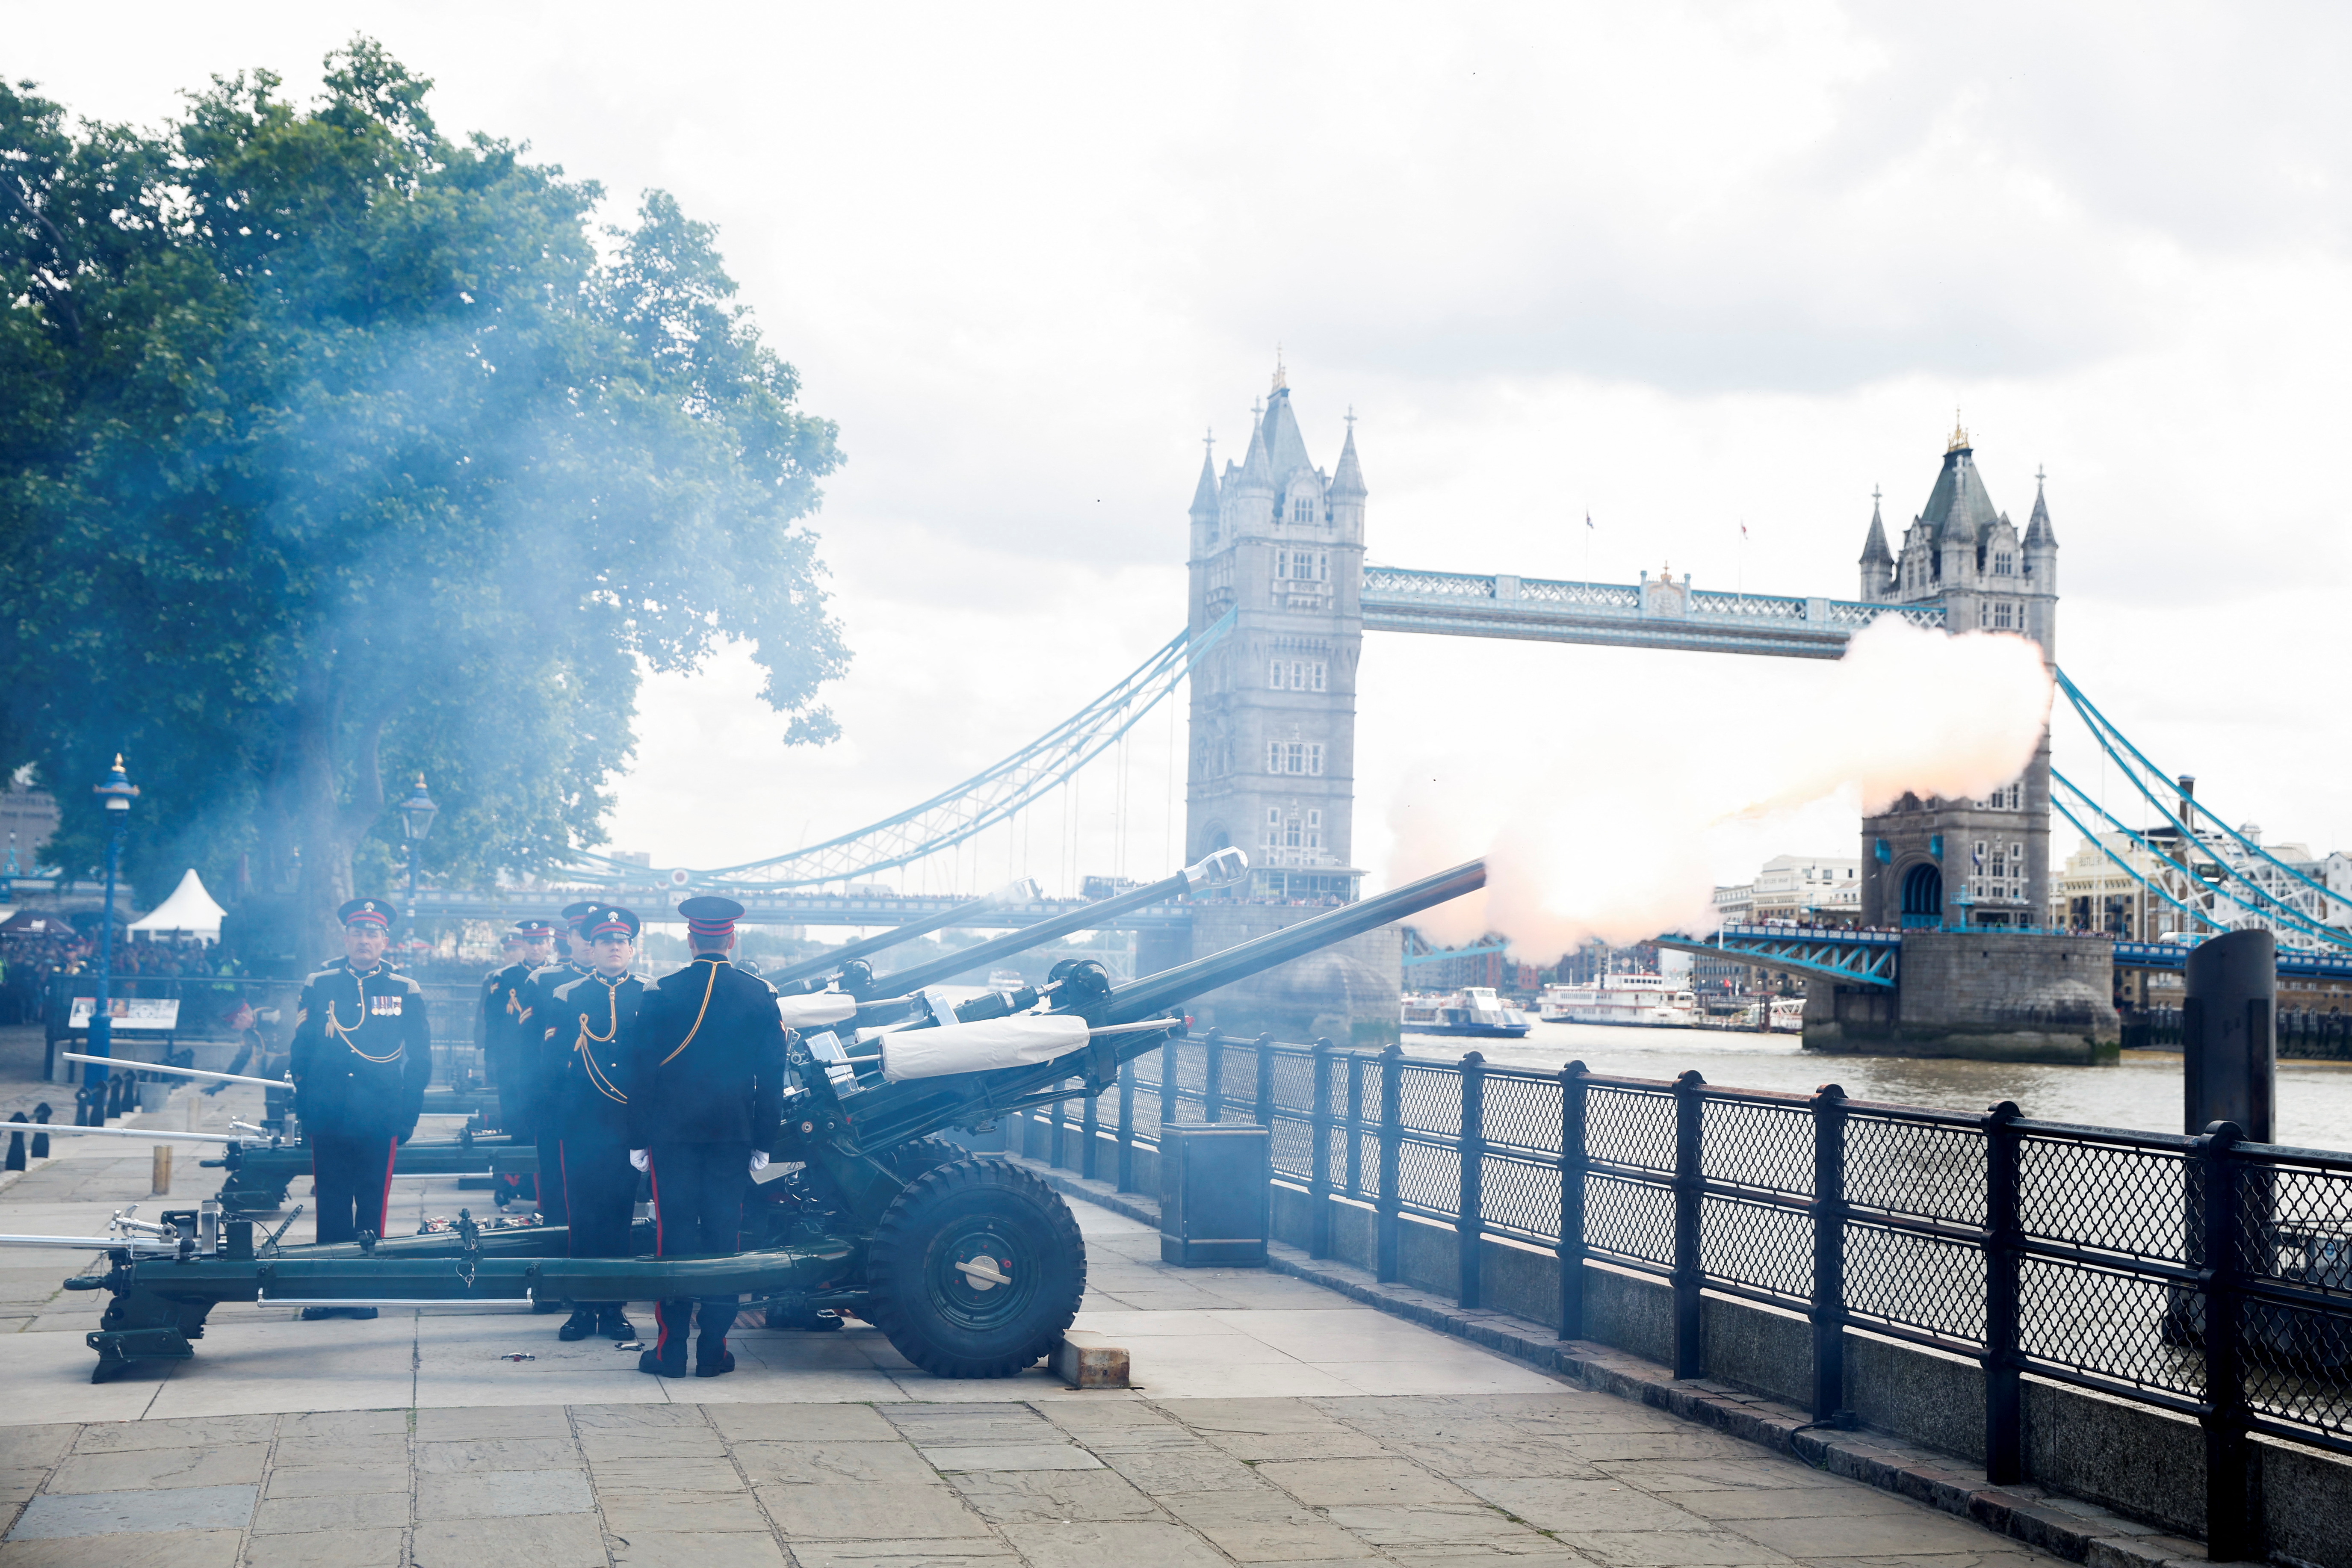 Los miembros de la Honorable Compañía de Artillería saludan con armas de fuego durante las celebraciones del Jubileo de Platino de la Reina Isabel de Gran Bretaña, en la Torre de Londres. REUTERS/John Sibley